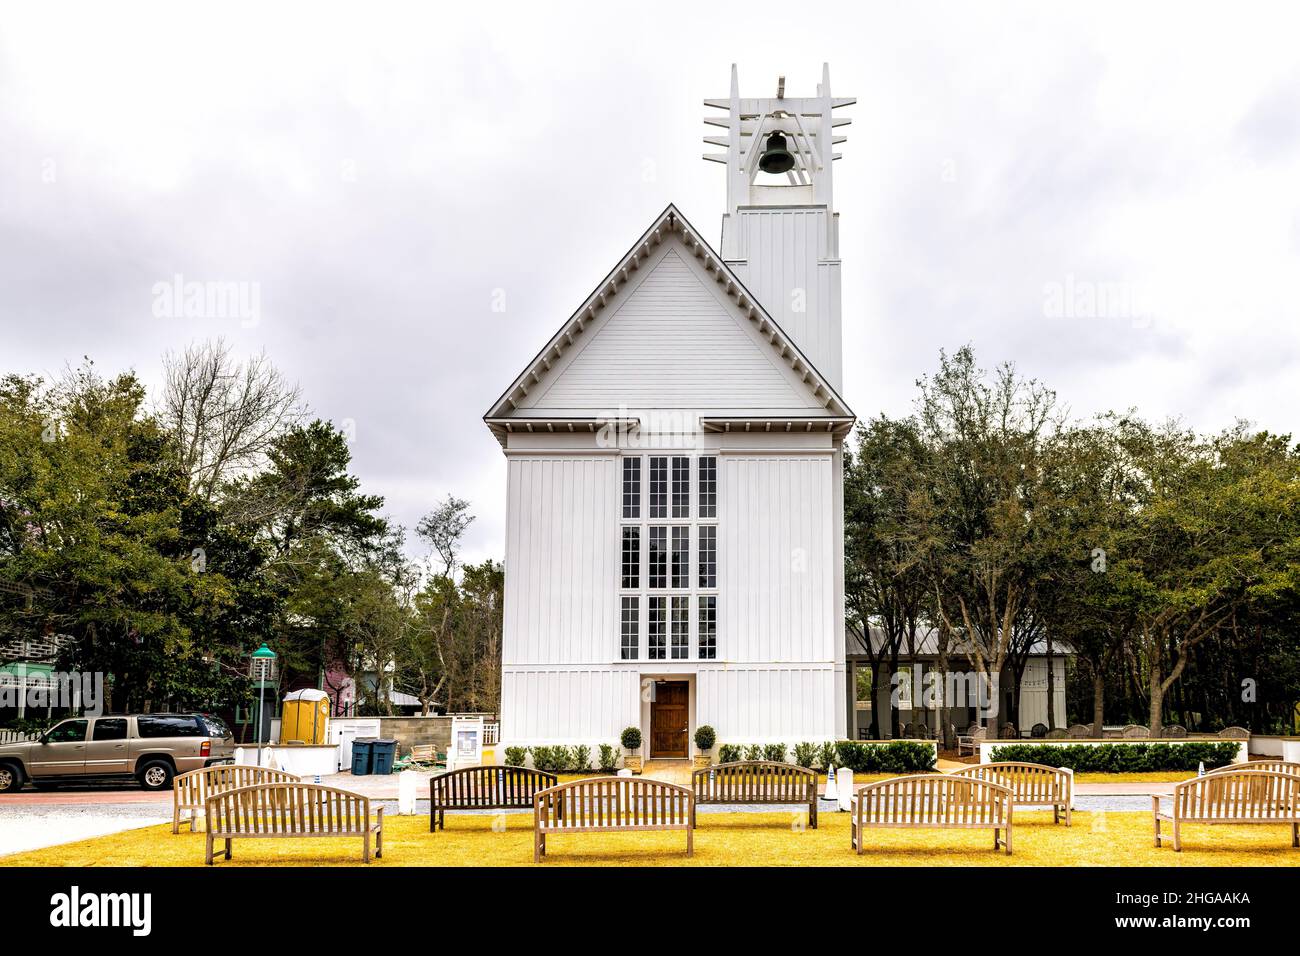 Seaside, USA - January 12, 2021: Seaside, Florida strada costiera della città con pannello di chiesa Cappella in legno bianco architettura nuovo stile urbanistico su clou Foto Stock